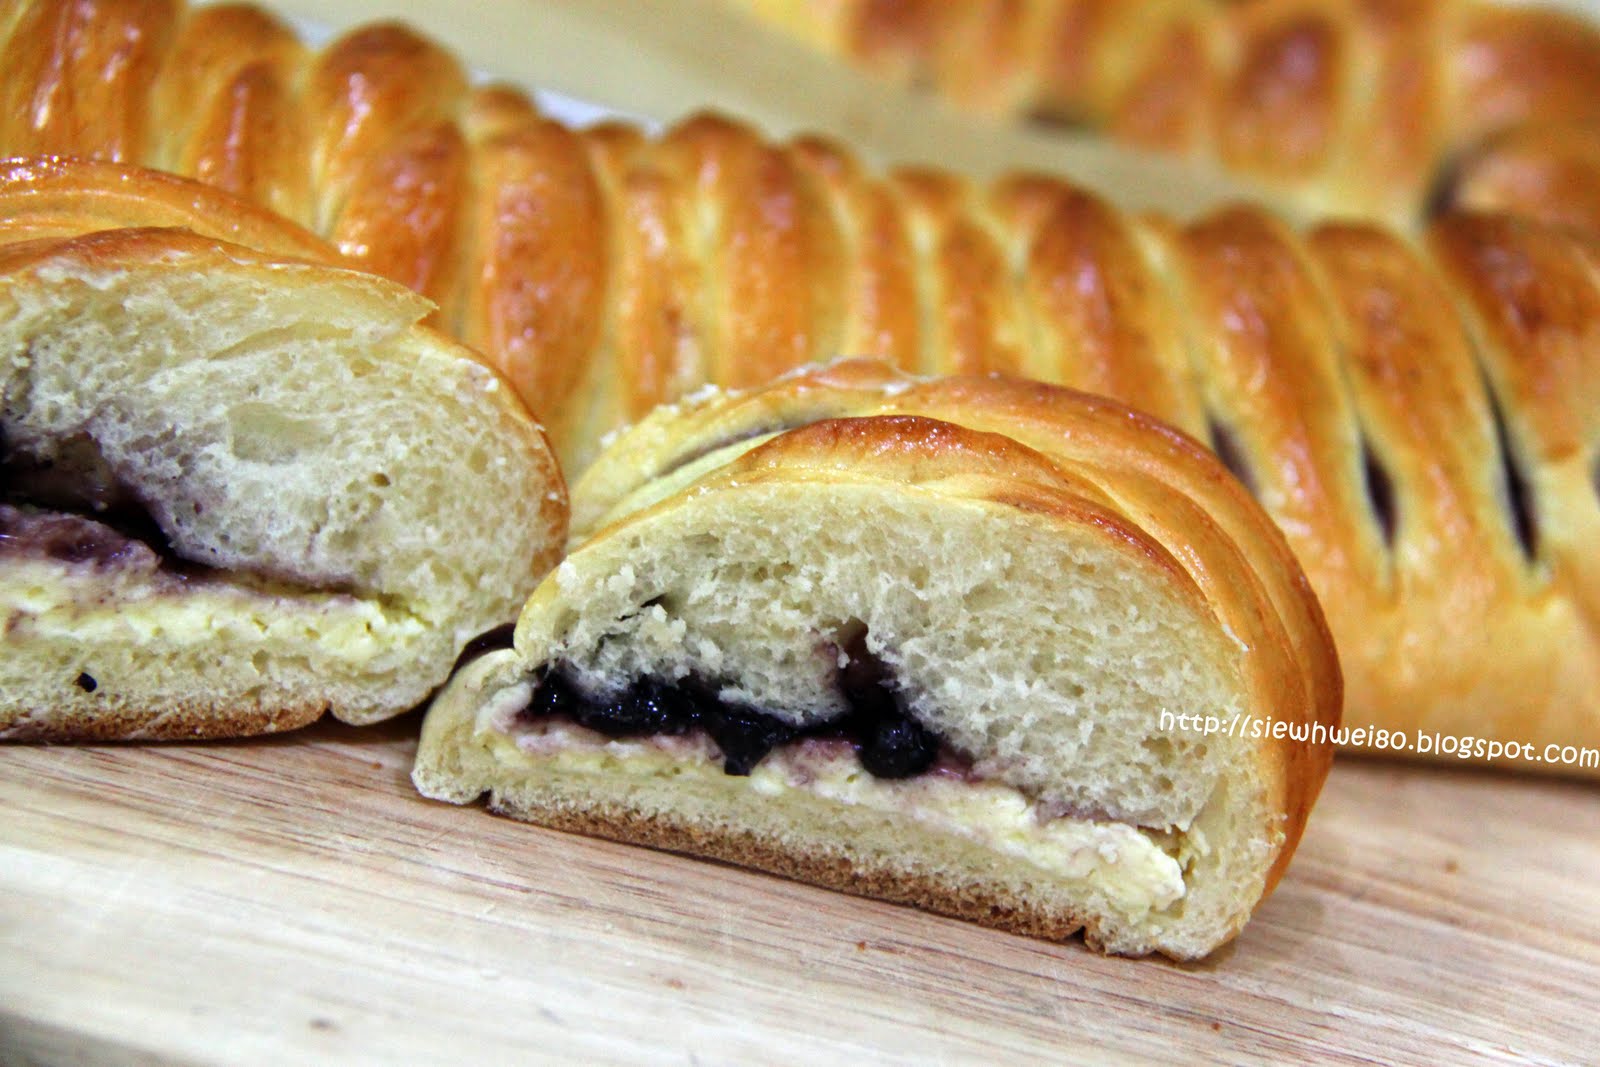 蓝莓酱面包,蓝莓酱面包的家常做法 - 美食杰蓝莓酱面包做法大全